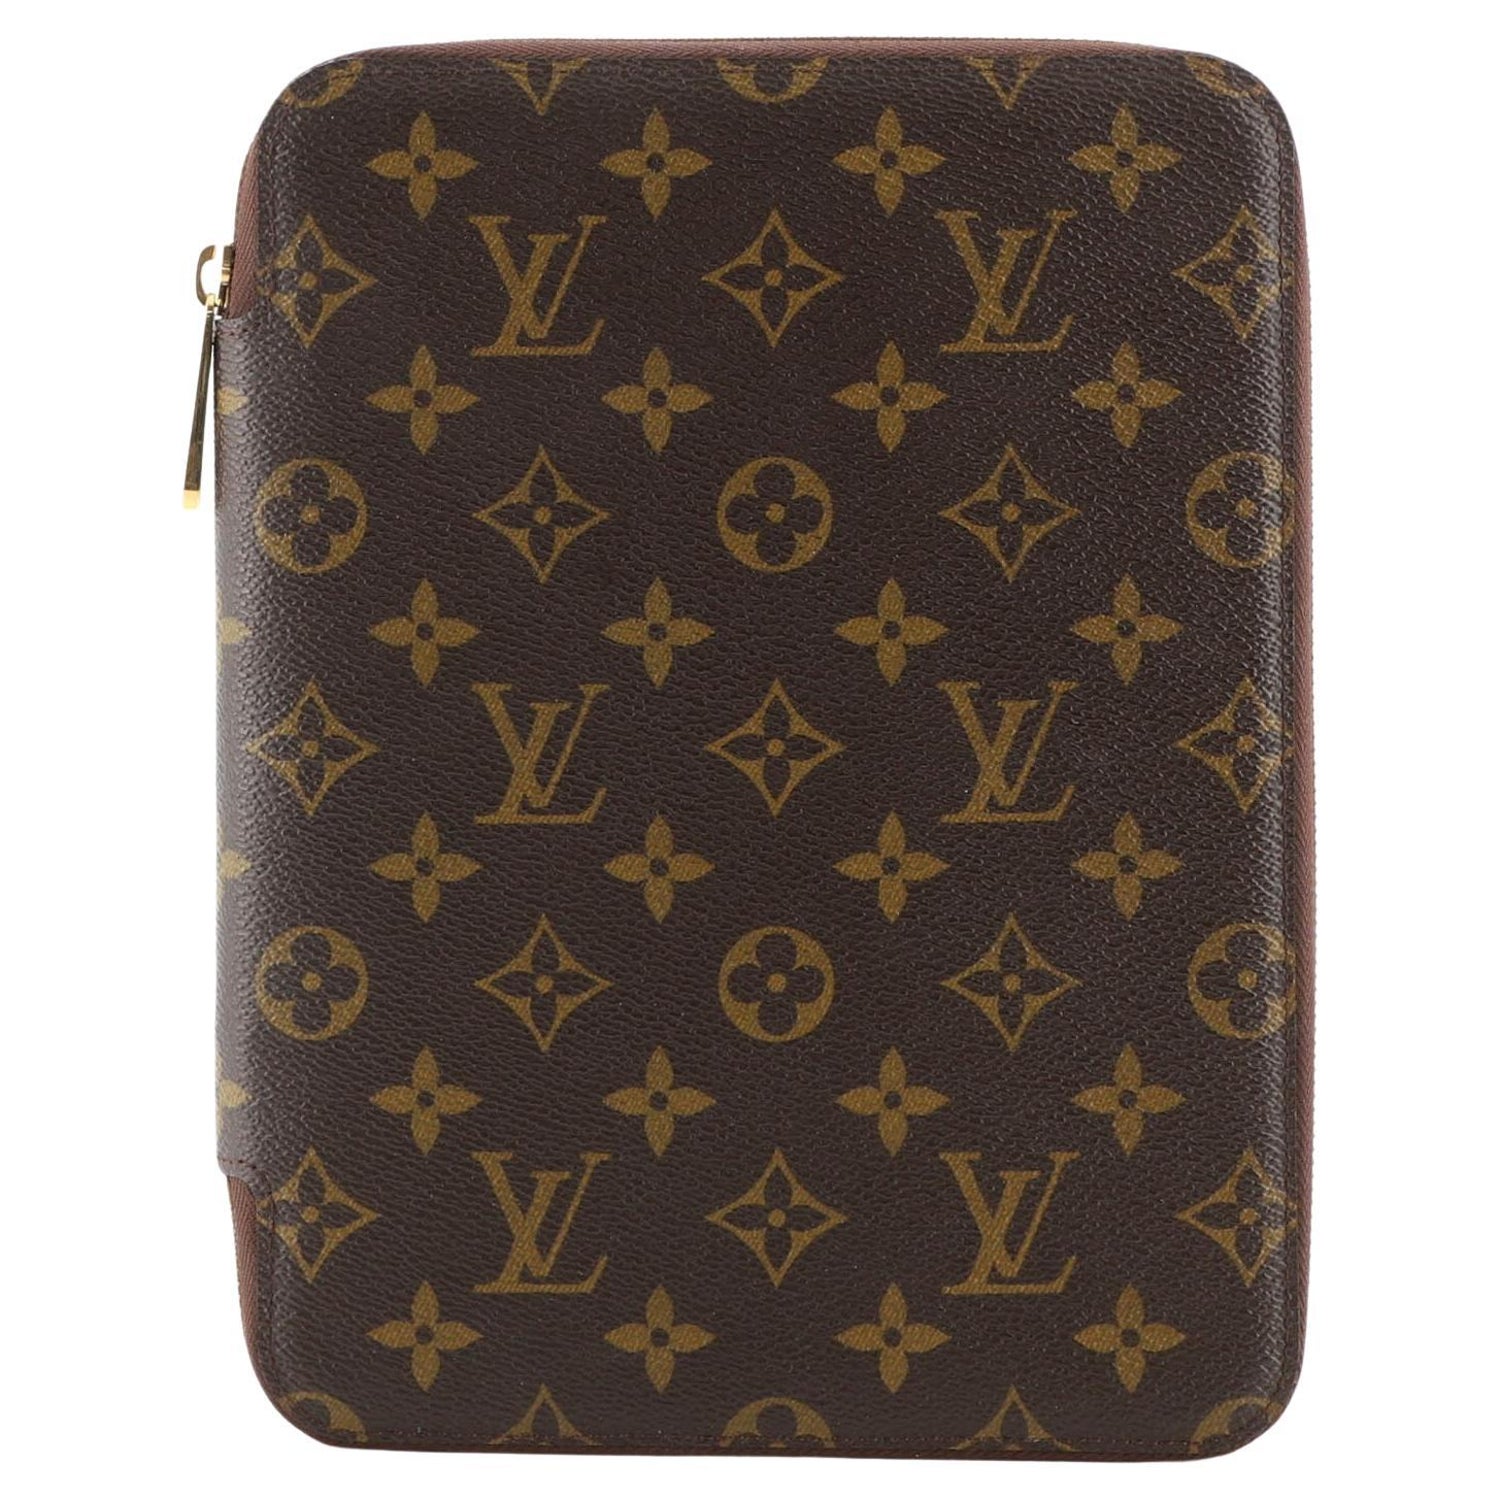 Authentic Louis Vuitton Document Attache Portfolio Case bag Unisex Vintage  monogram Laptop